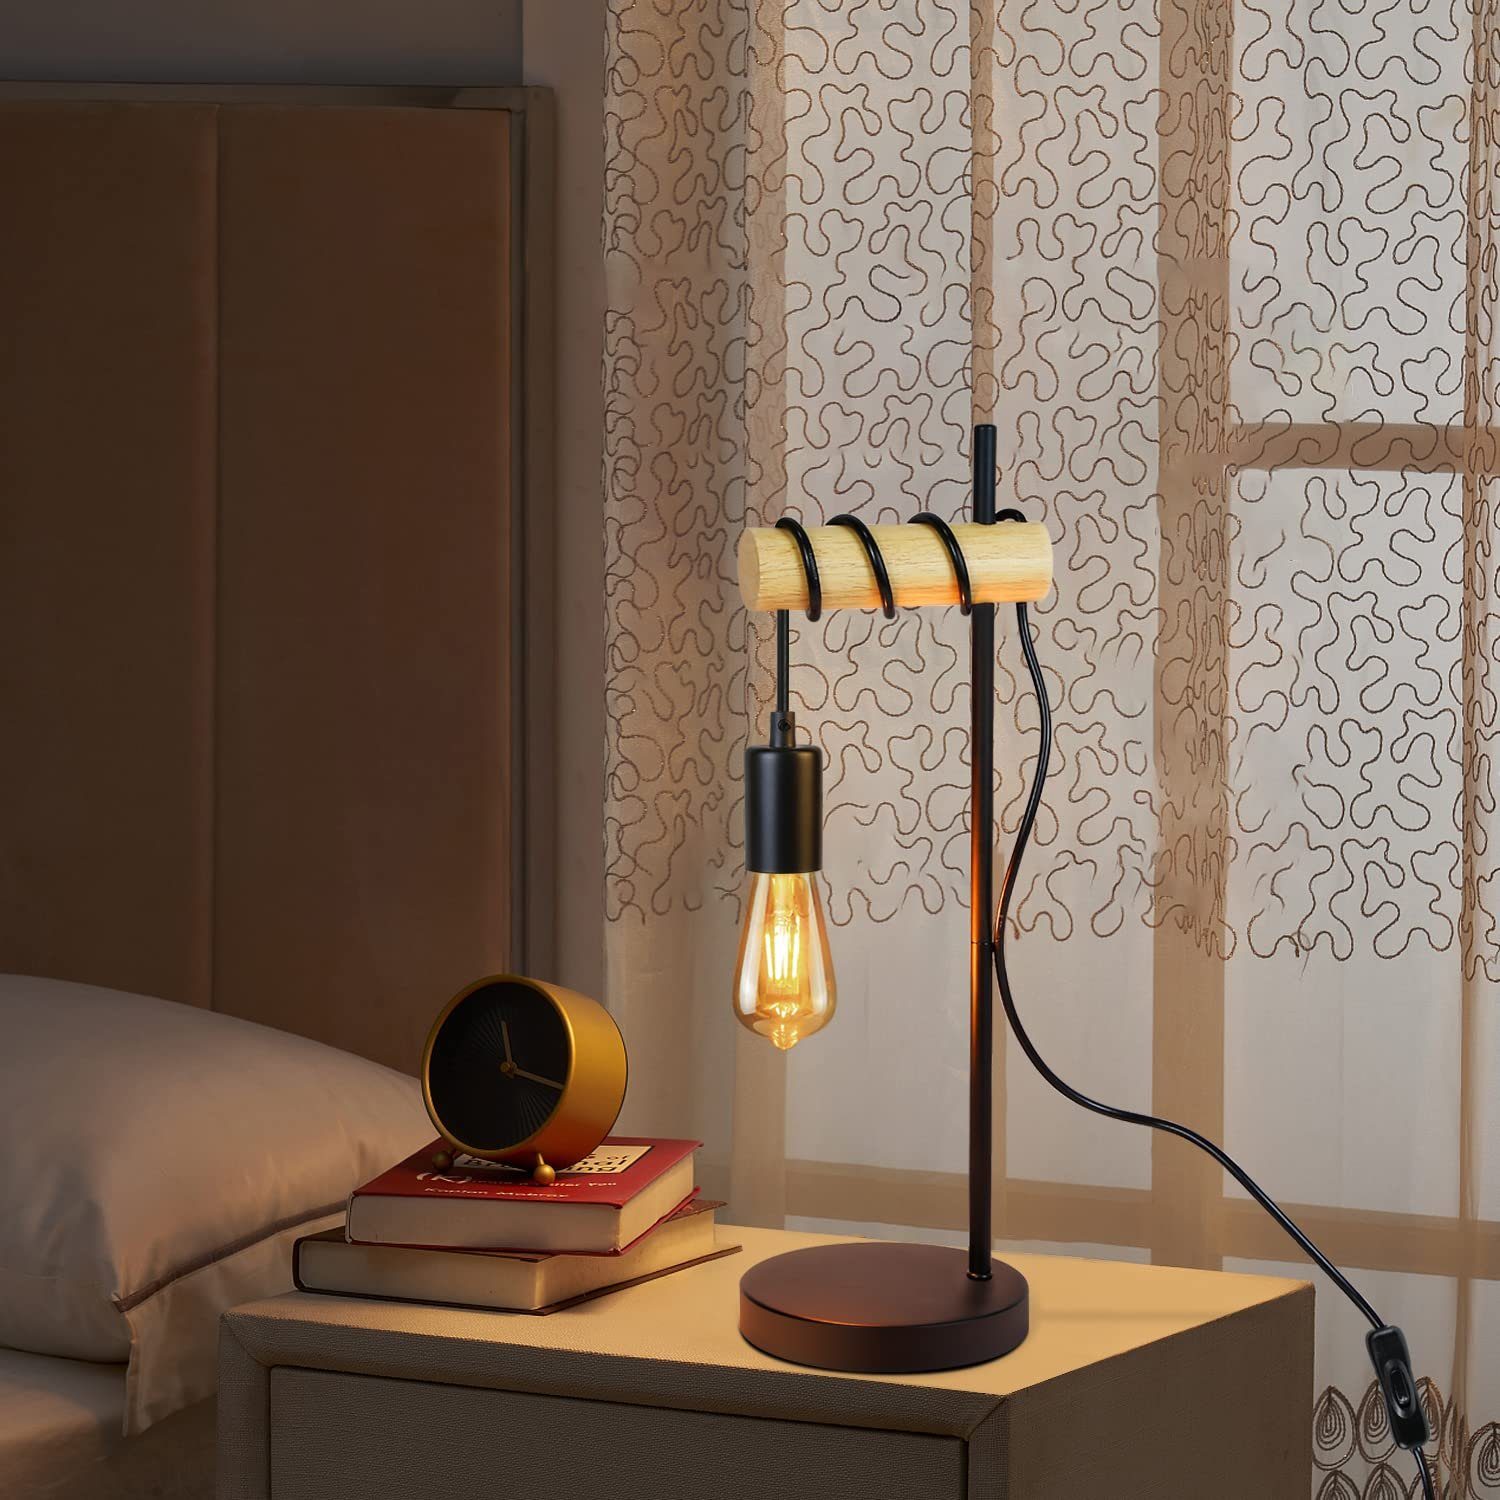 Kabelschalter Schlafzimmer, für Nettlife Holz Industriestahl LED Schreibtischlampe und Retro E27-max25W Wohnzimmer wechselbar,